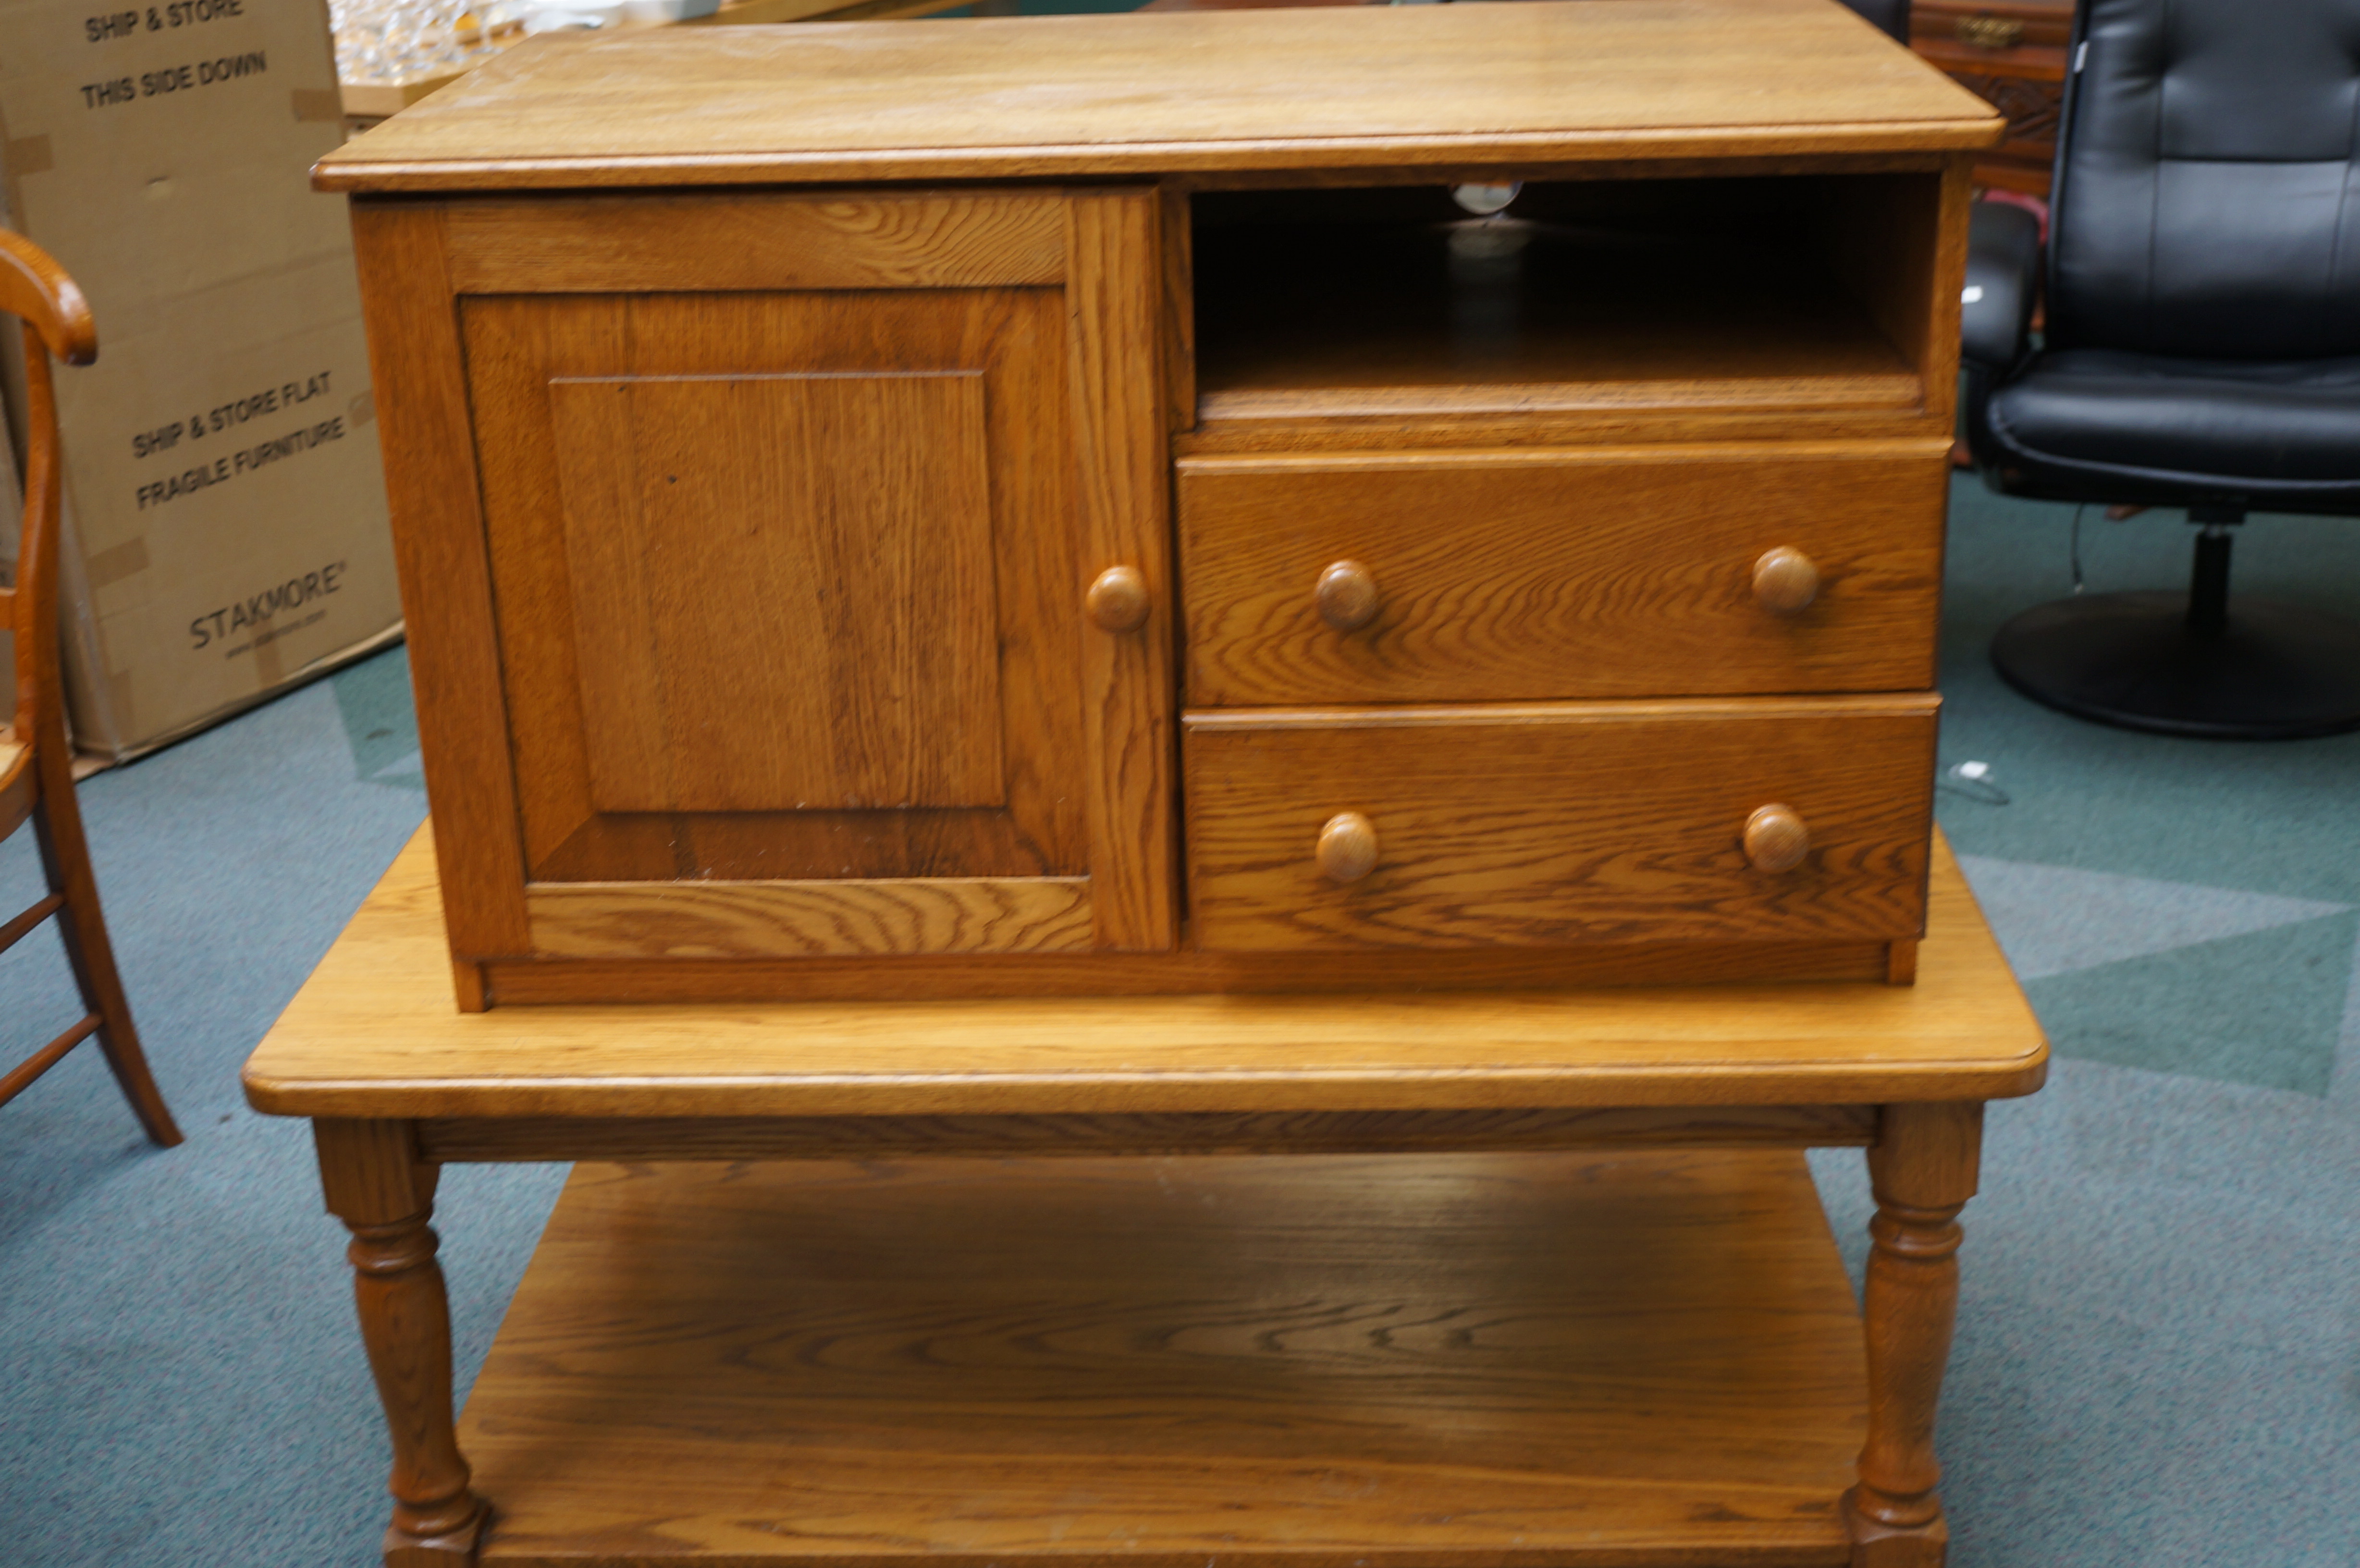 Solid oak coffee table & oak cabinet - very heavy